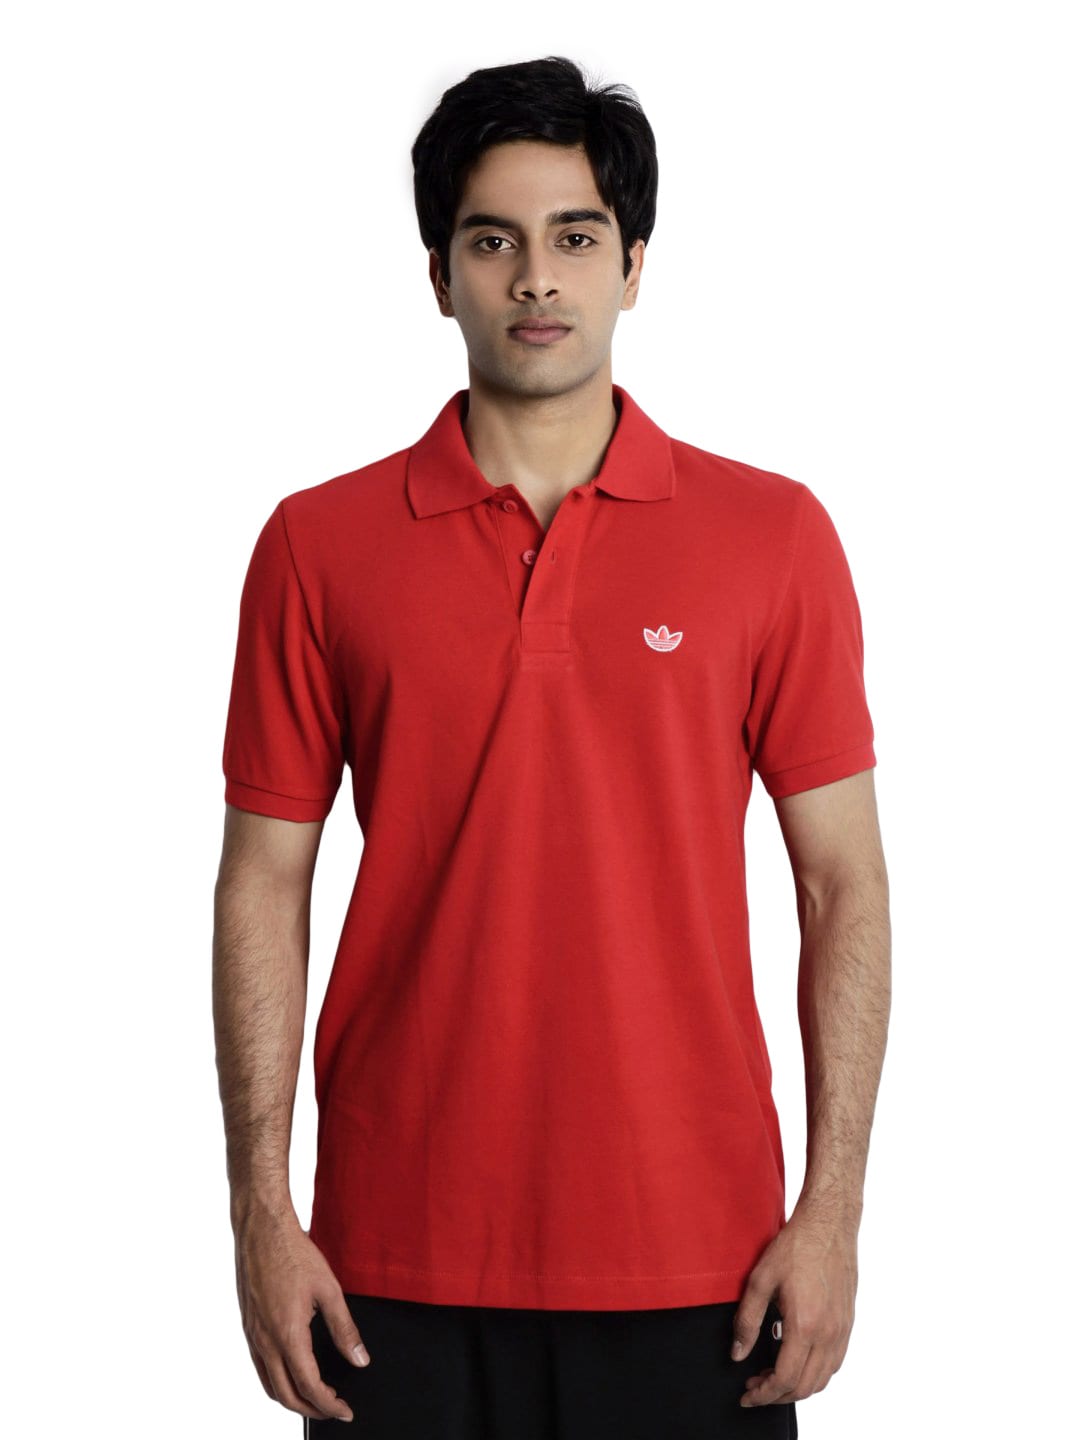 ADIDAS Originals Men Red Polo T-shirt